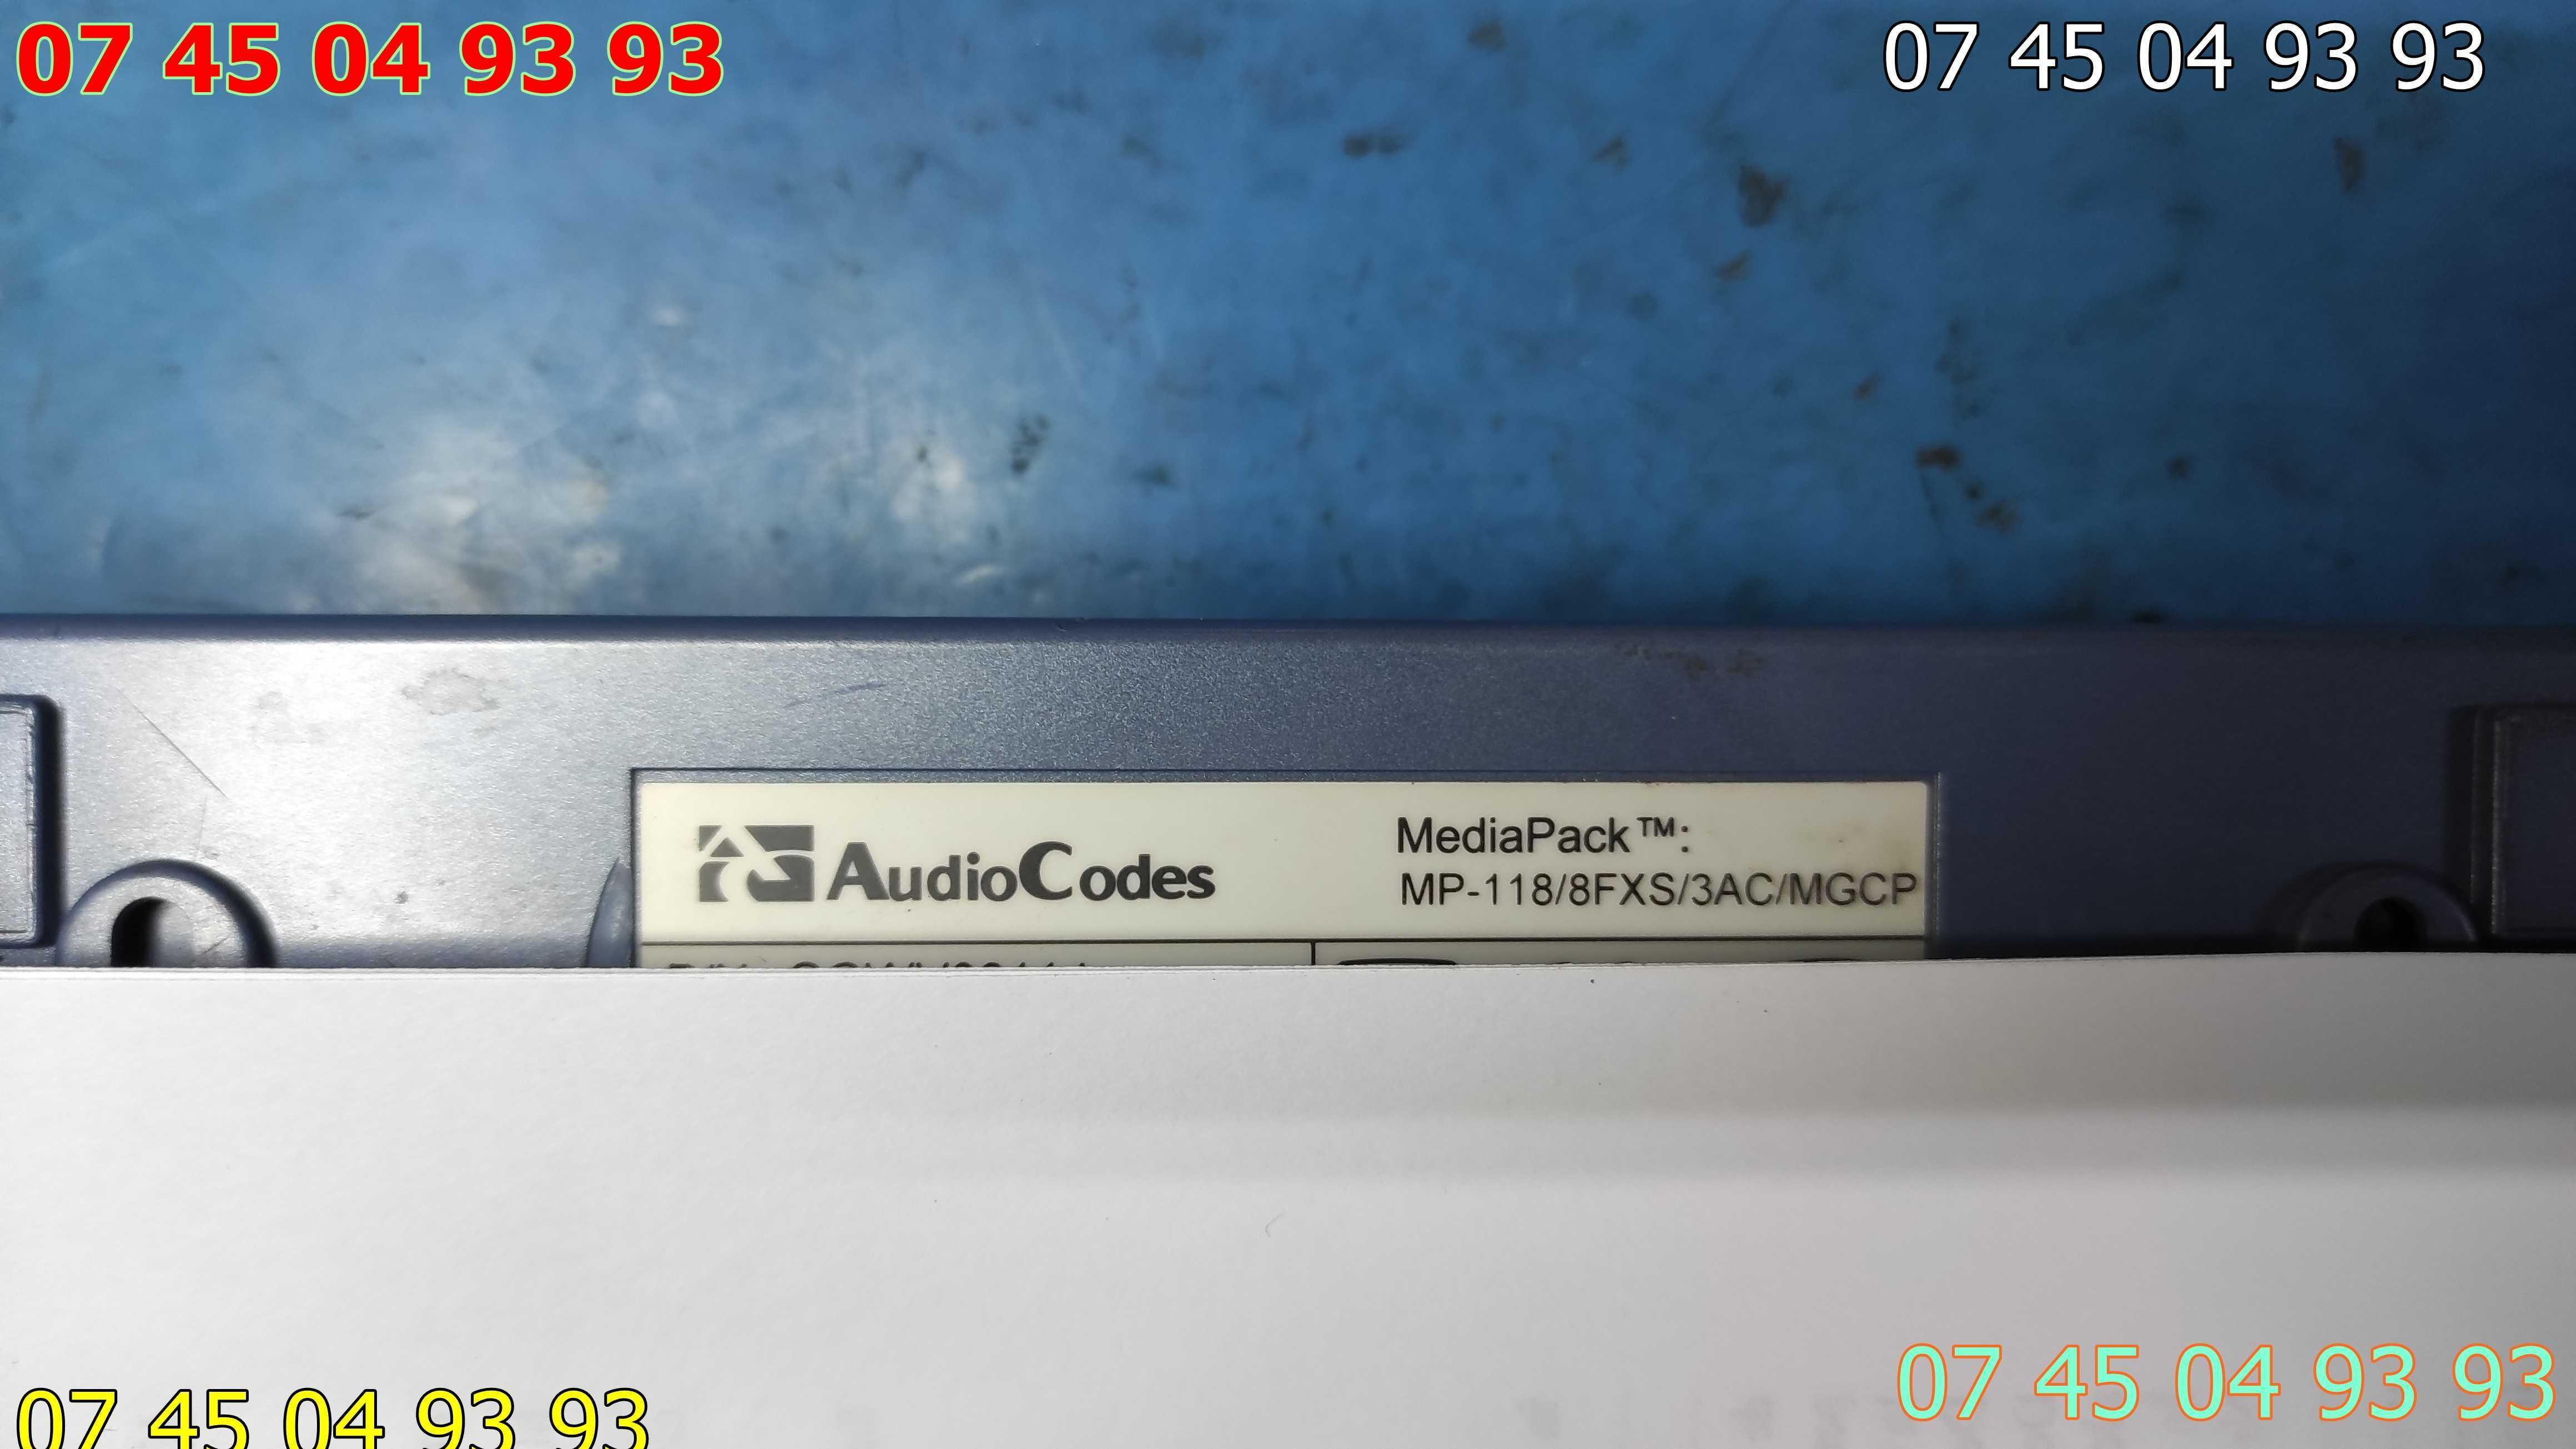 Audio codes mp 112.fxs.3a.cmgcp are 2 porturi